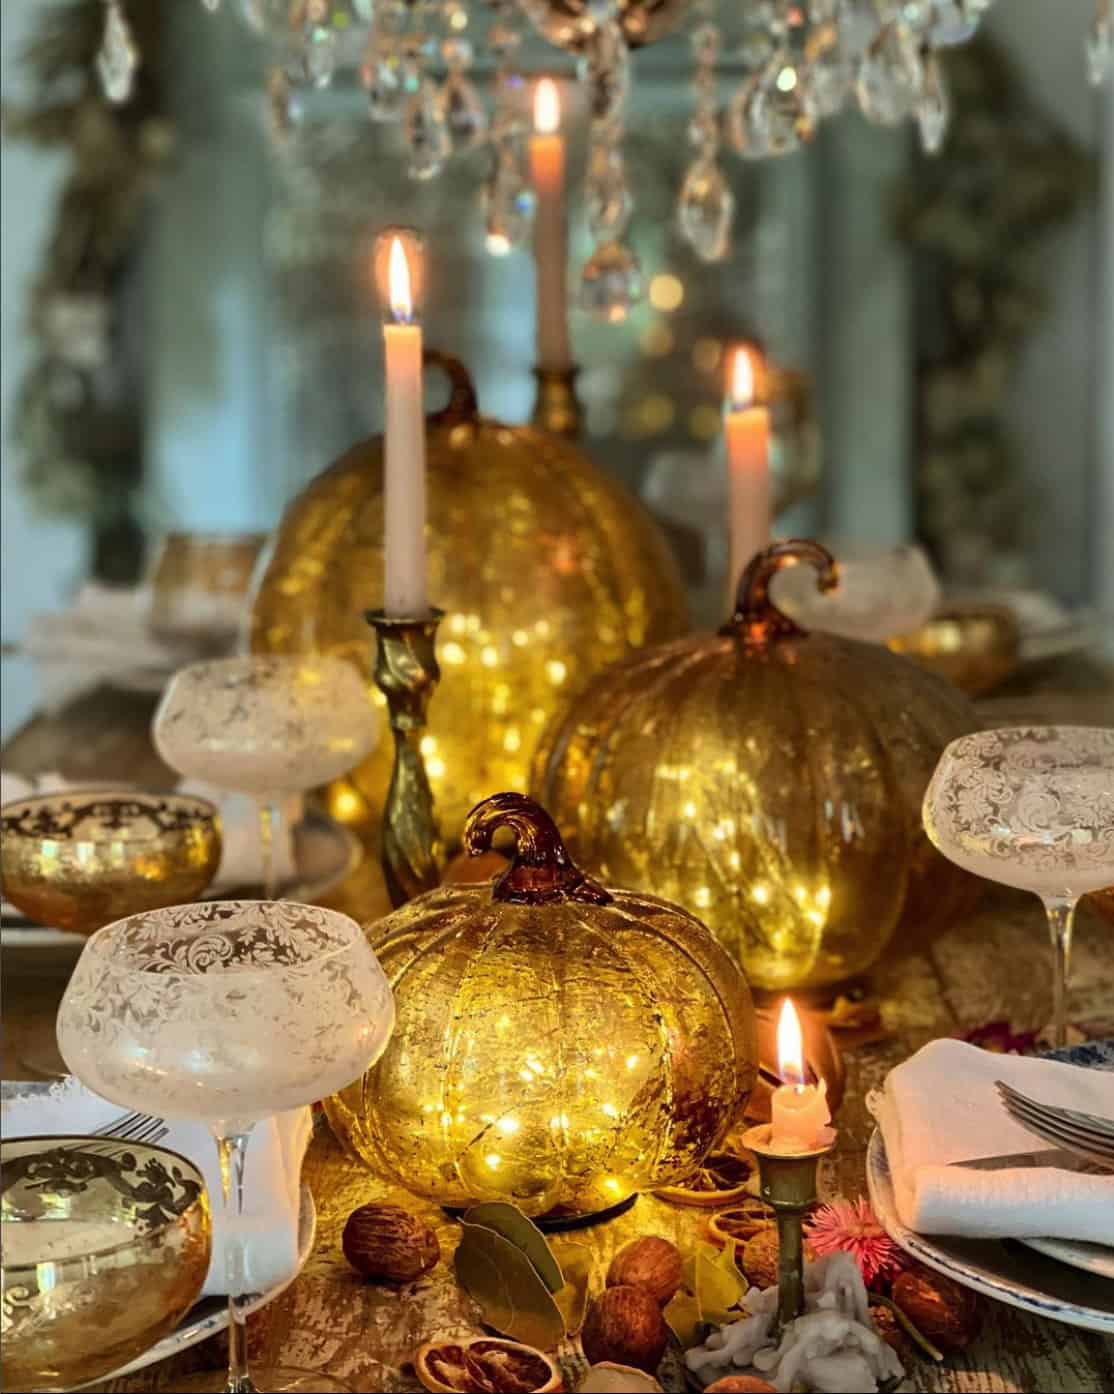 fall-pumpkin-centerpiece-table-decor-with-glowing-glass-pumpkins